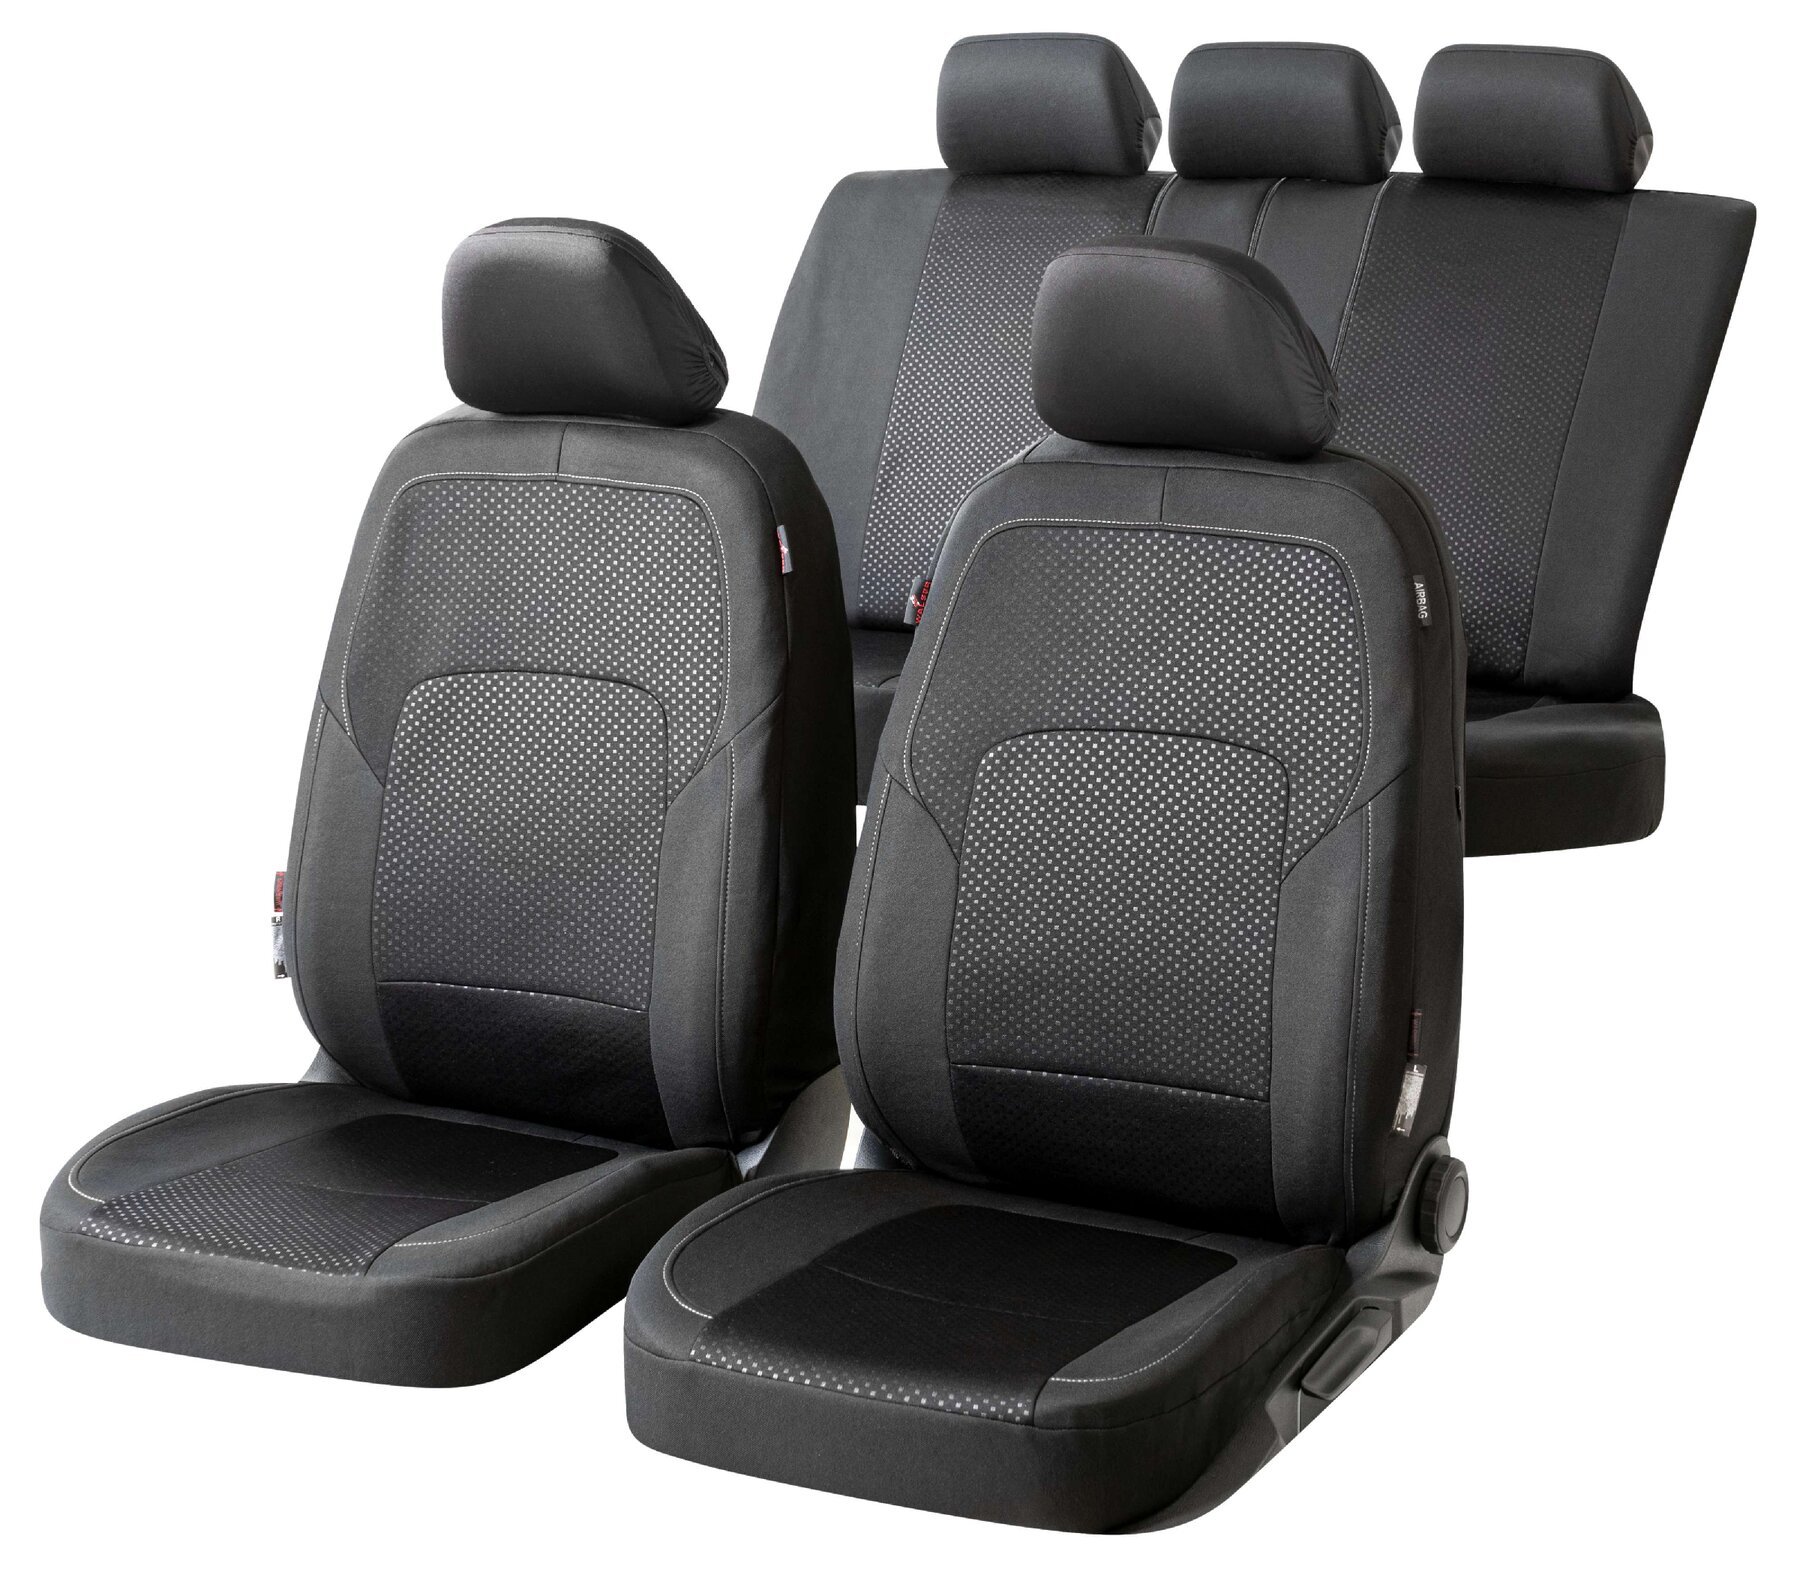 Premium Autostoelbekleding Logan met Zipper ZIPP-IT, Autostoelhoes set, 2 stoelbeschermer voor voorstoel, 1 stoelbeschermer voor achterbank zwart/silber 11862